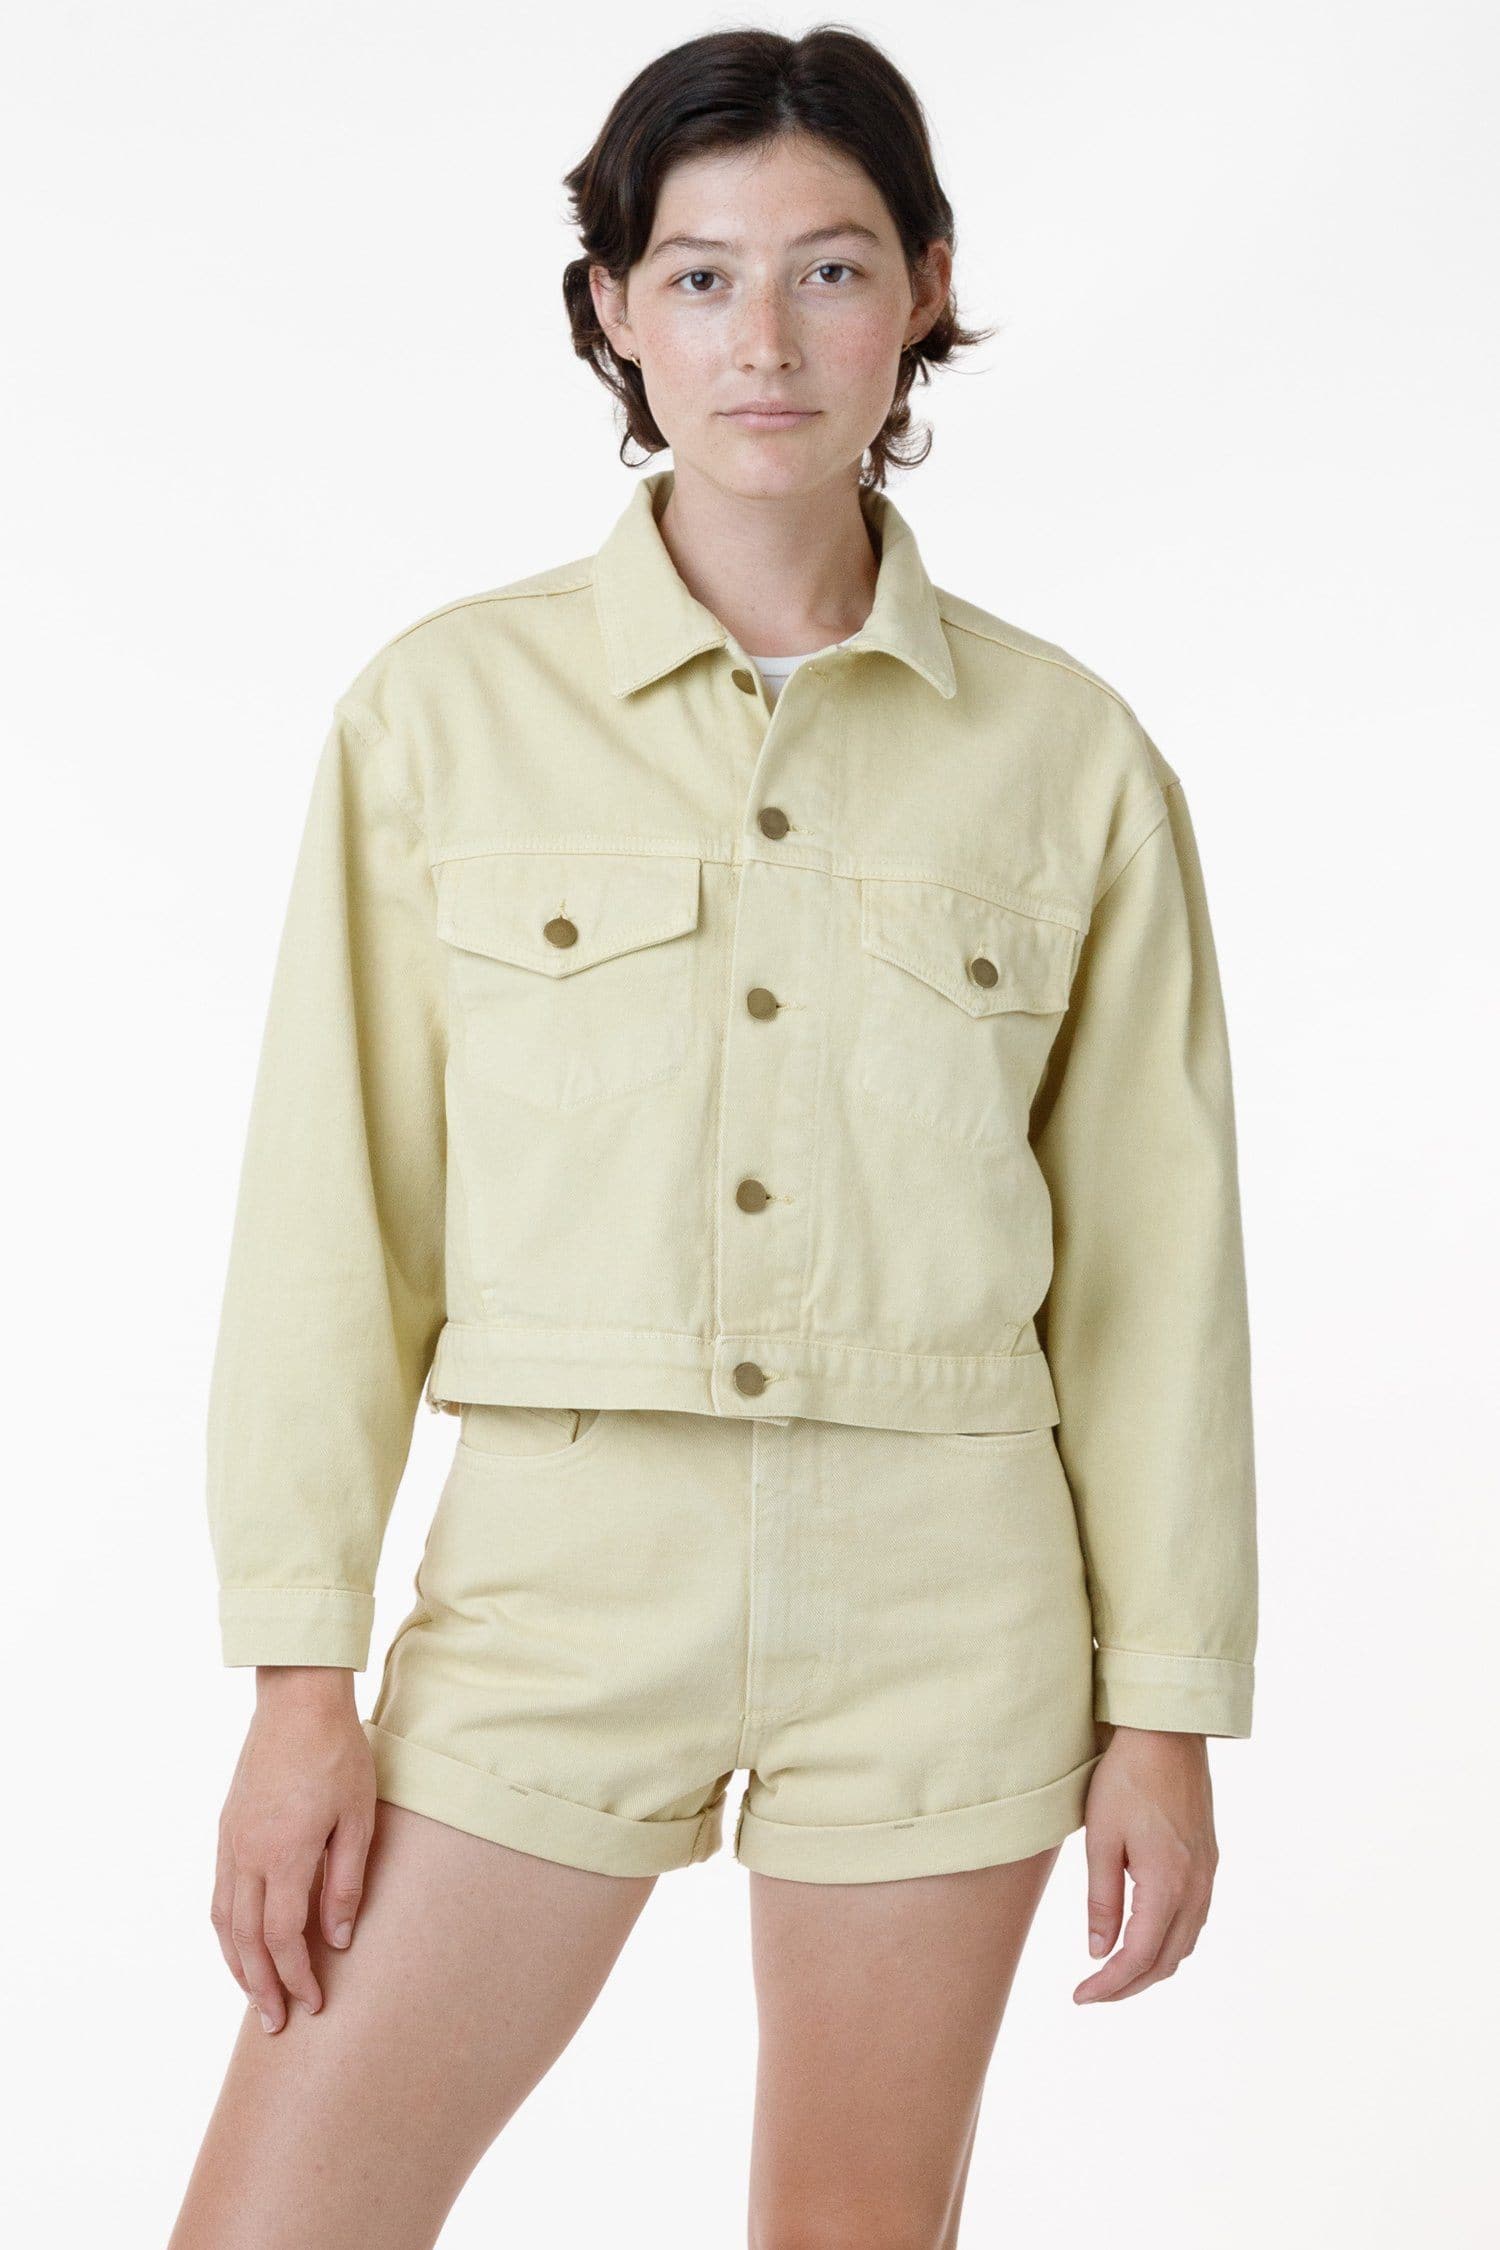 RBDW03GD - Garment Dye Cropped Bull Denim Jacket (Limited Edition)